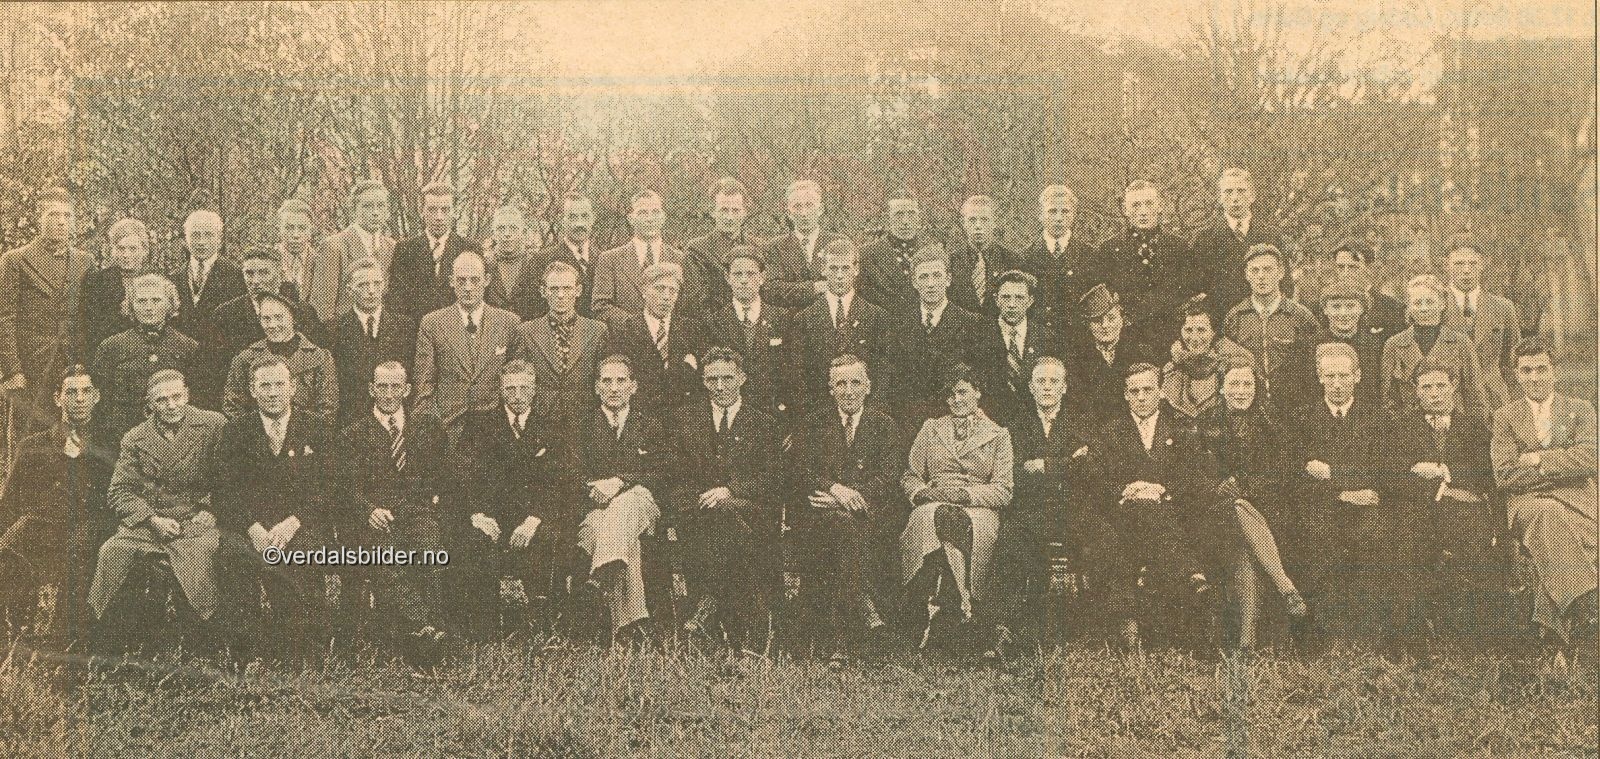  Bildet er tatt i Skilleparken ved Herredshuset i forbindelse med lagets siste årsmøte. AIL Falk ble stiftet i 1934 og i desember 1940 var det planer om å slå sammen laget med det 